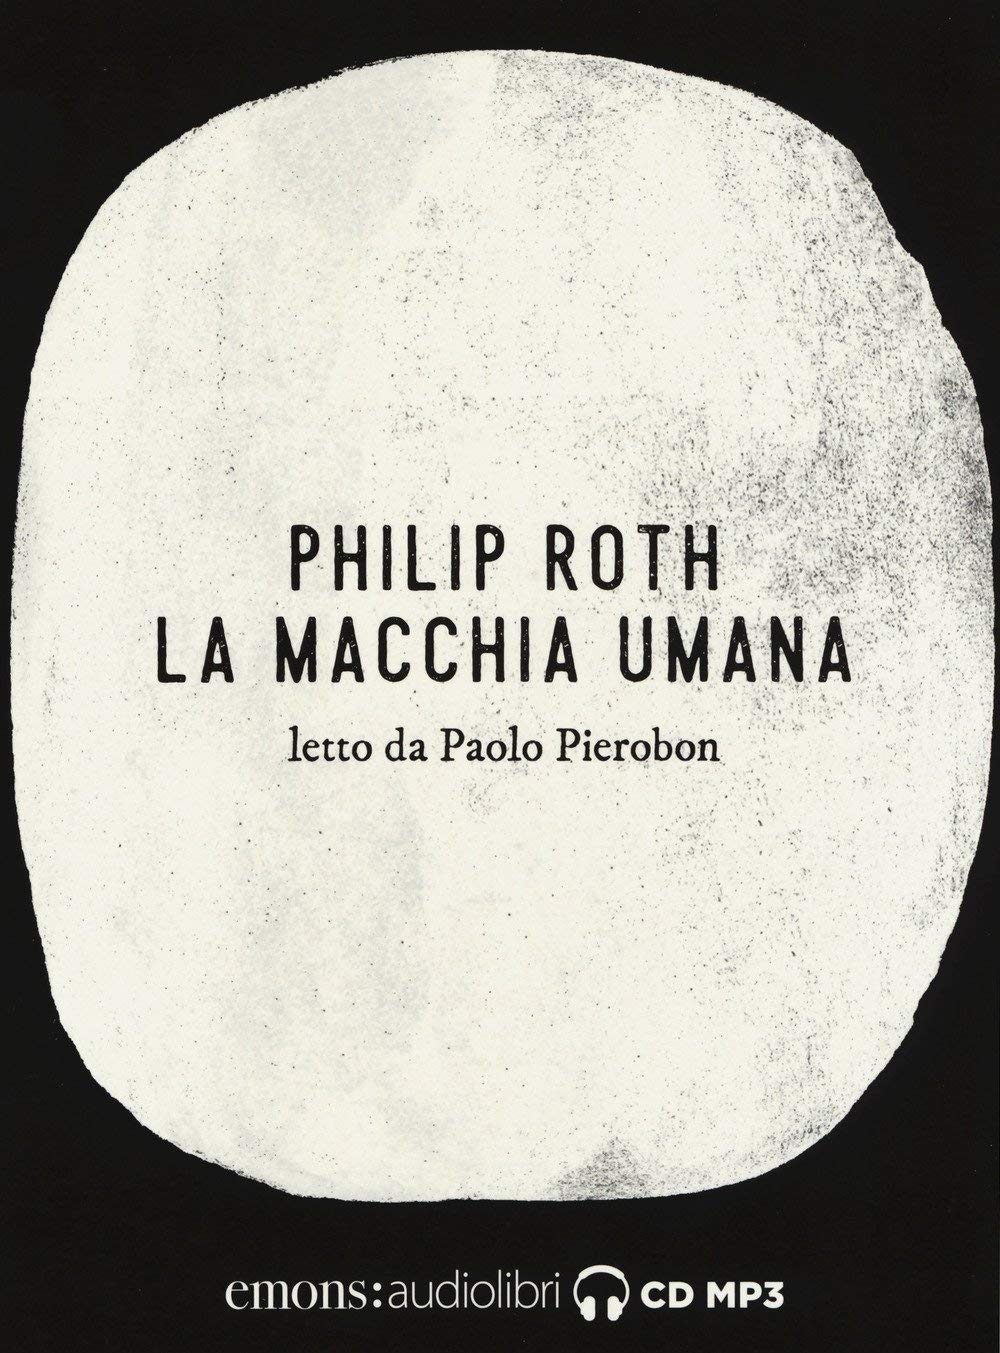 Audiolibro Philip Roth - Roth, Philip (Audiolibro) NUOVO SIGILLATO, EDIZIONE DEL 12/10/2017 SUBITO DISPONIBILE